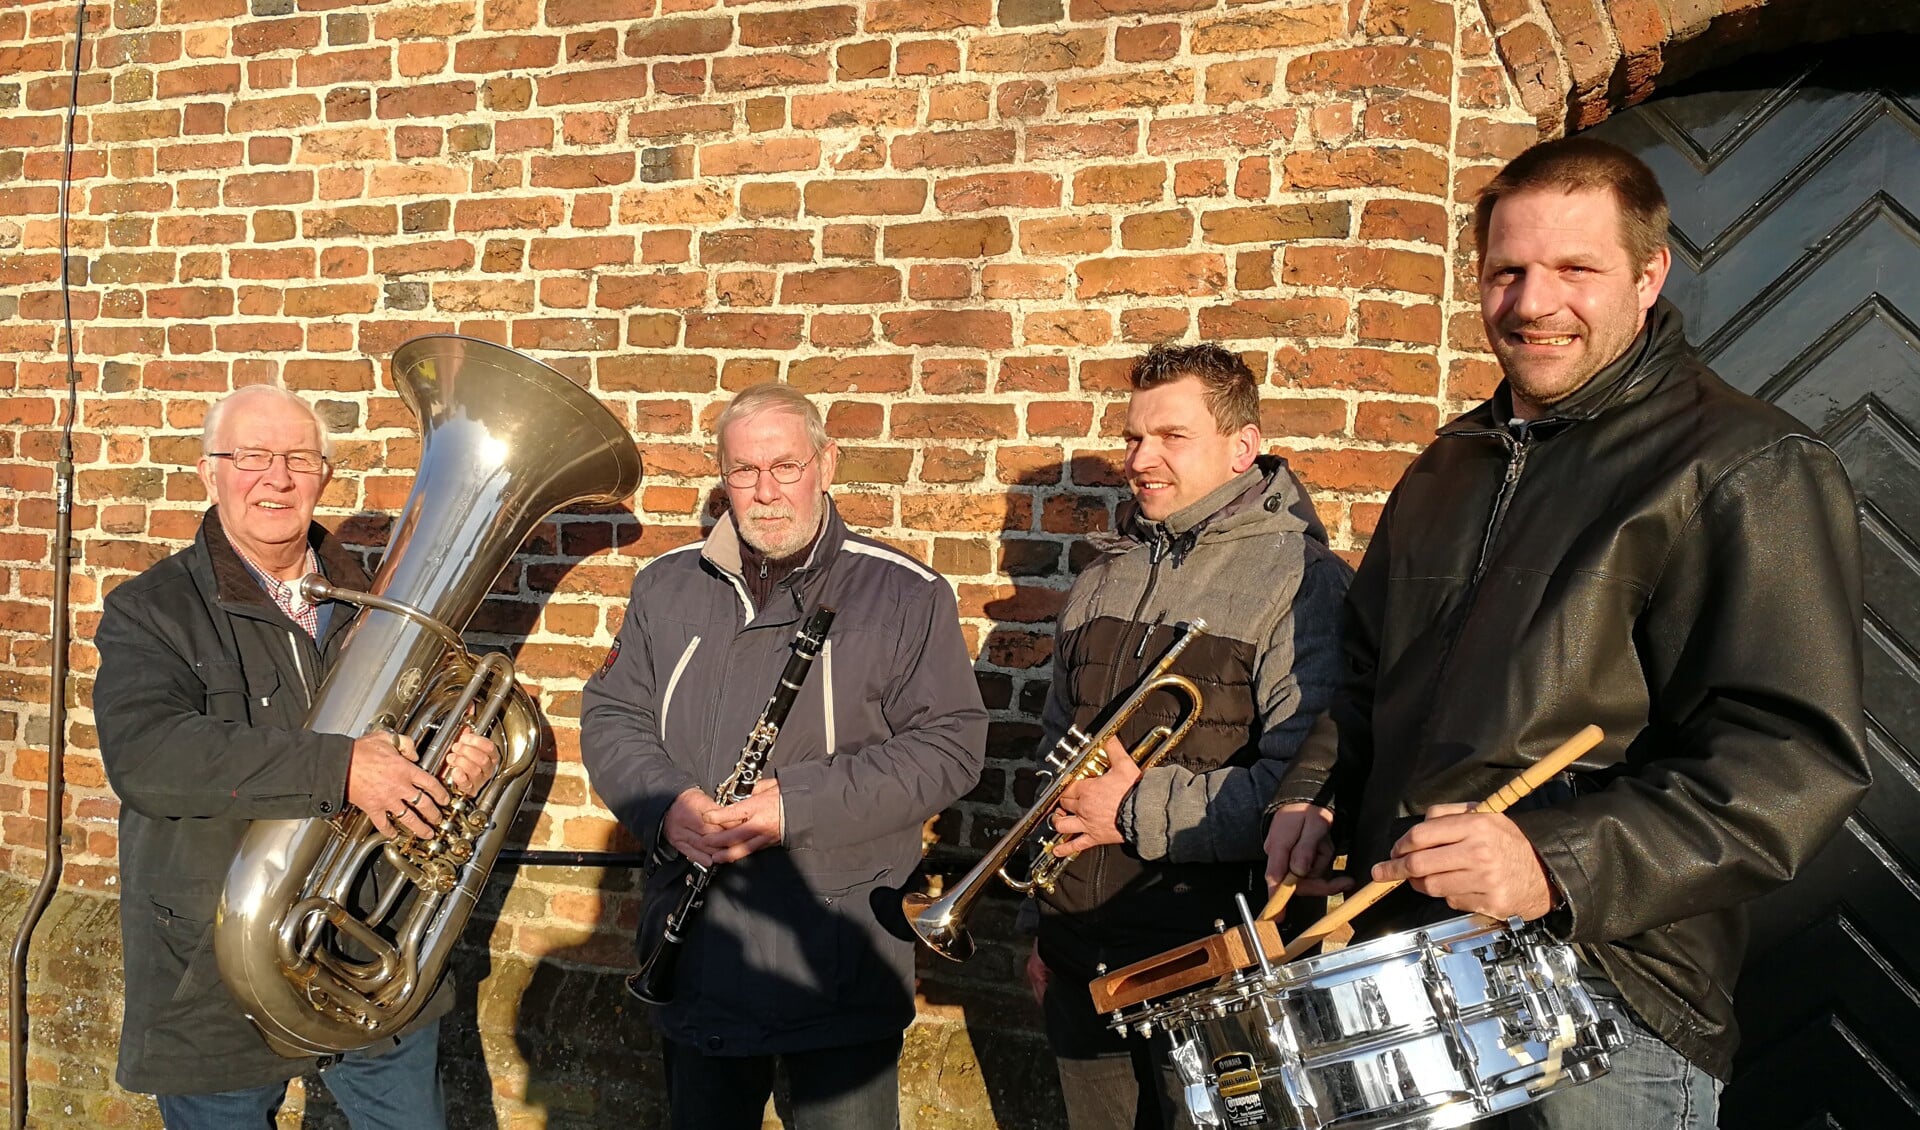 De 4 jubilarissen, Gerrit Klein Kranenbarg, Reinier Timmerije, Jeroen Rensink en Jesper Hiddink (vlnr).  Foto: Rob Weeber